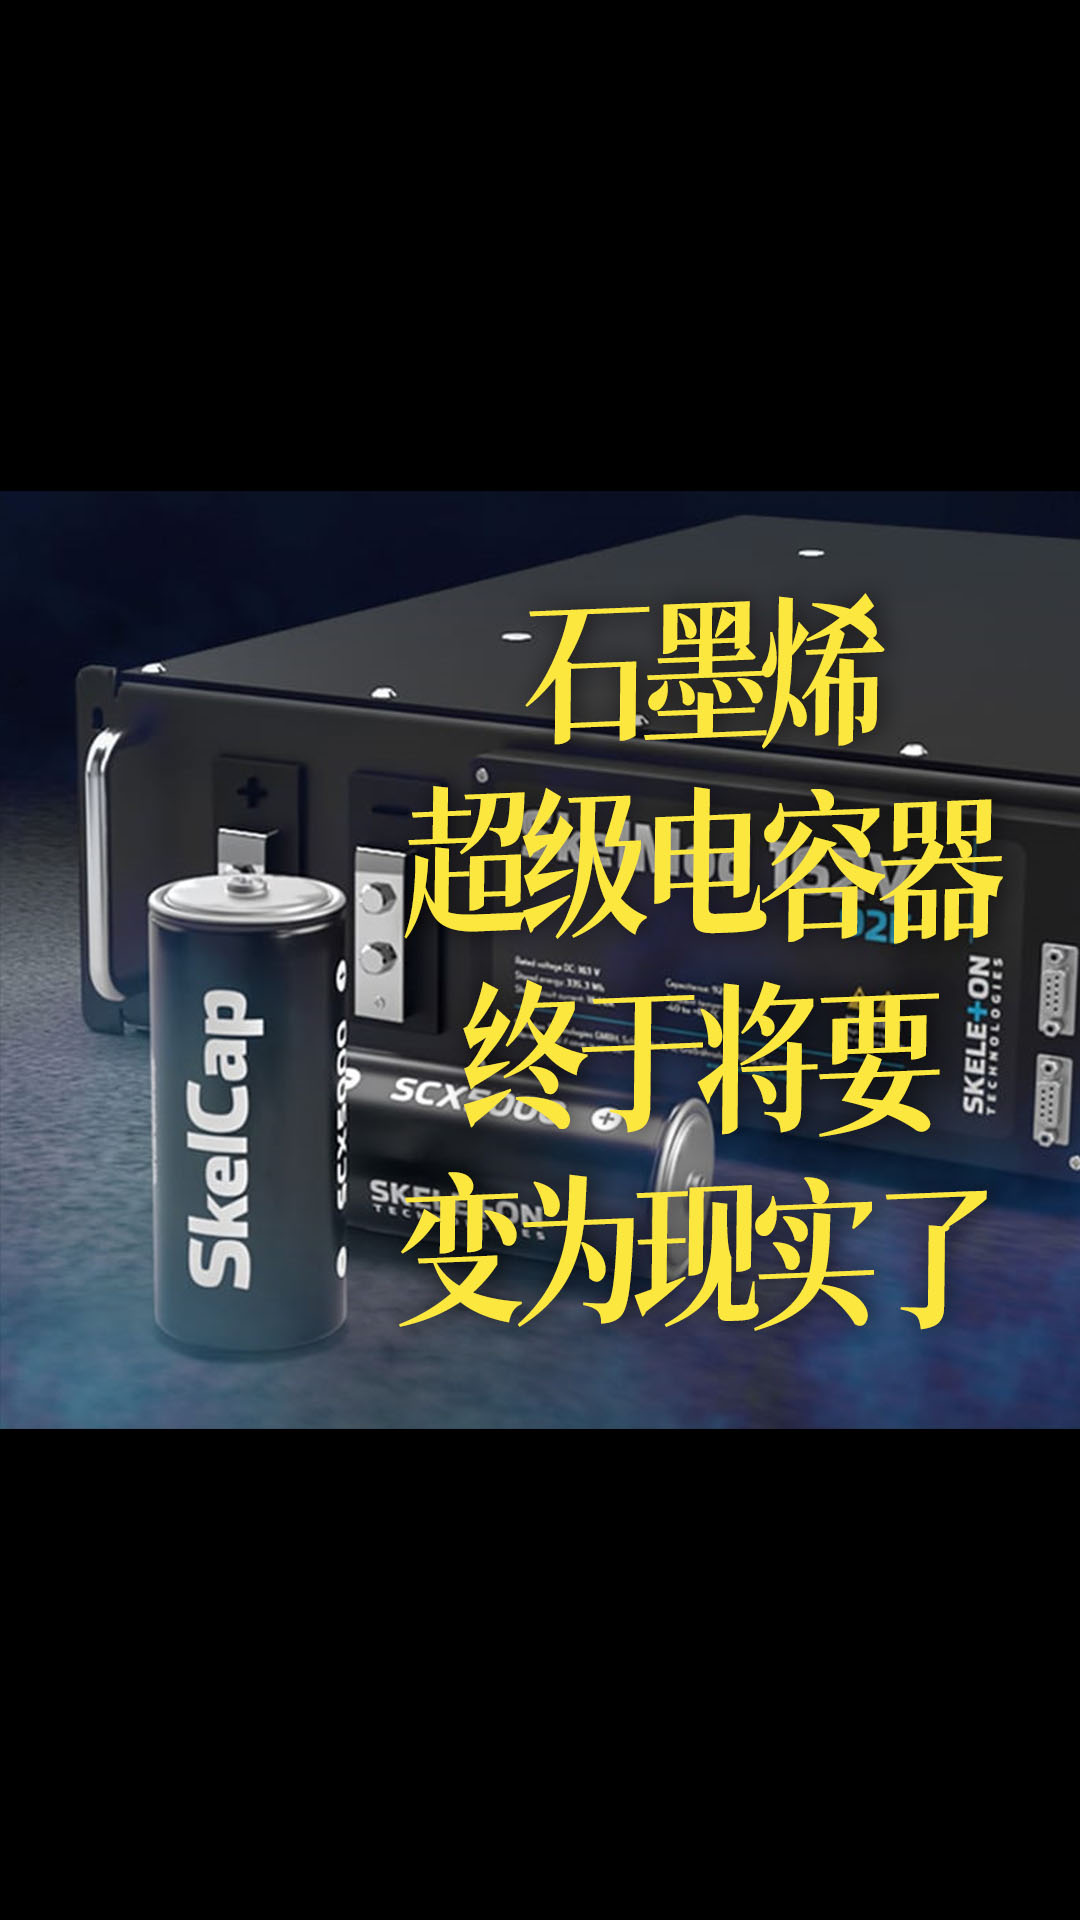 【中文】石墨烯超级电容器-终于将要变为现实了